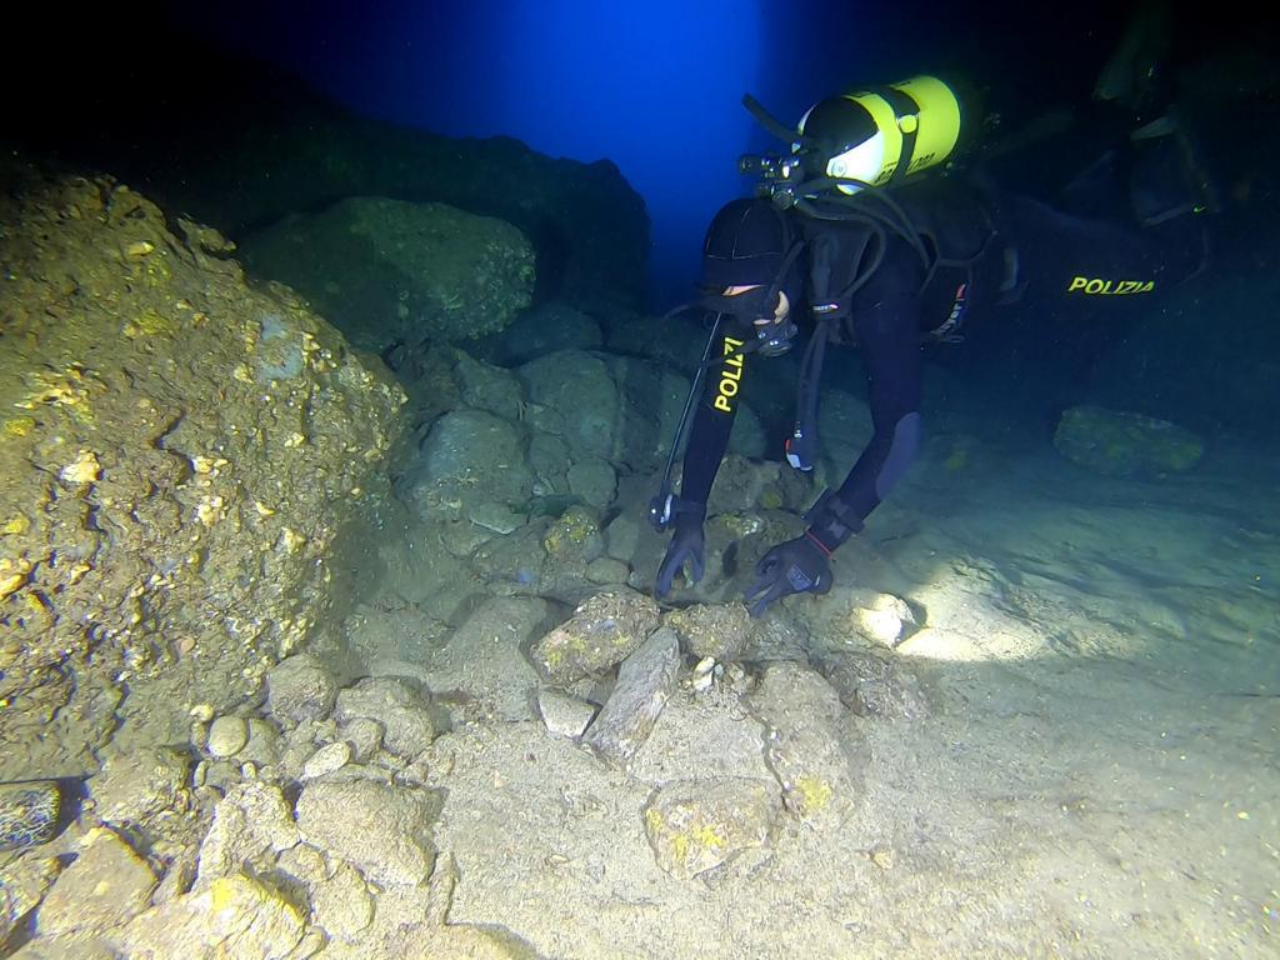 Fotografia tirada durante descoberta de carga de obsidianas em Capri